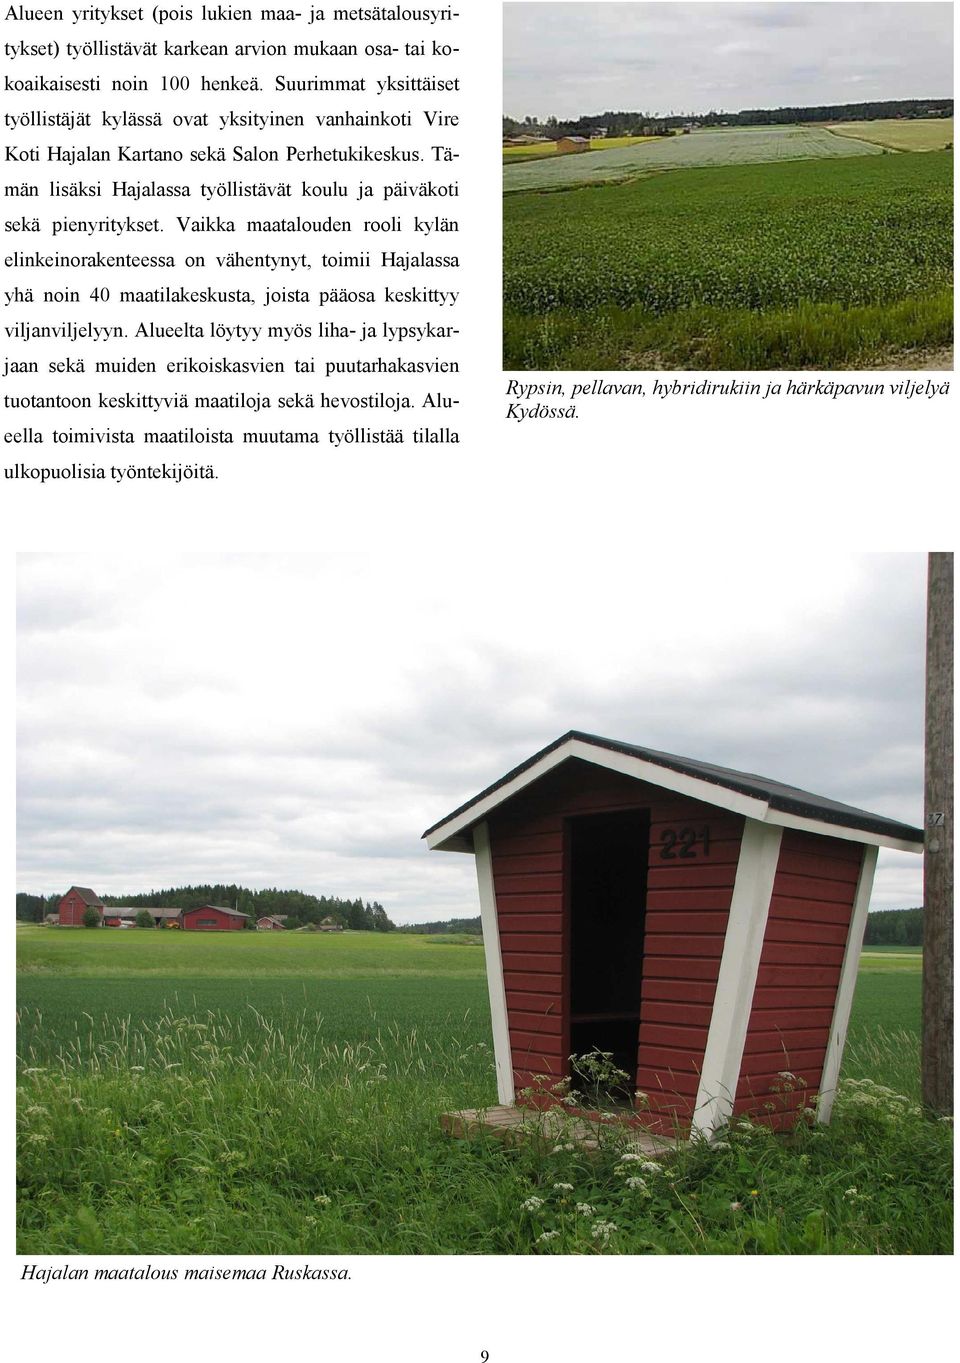 Vaikka maatalouden rooli kylän elinkeinorakenteessa on vähentynyt, toimii Hajalassa yhä noin 40 maatilakeskusta, joista pääosa keskittyy viljanviljelyyn.